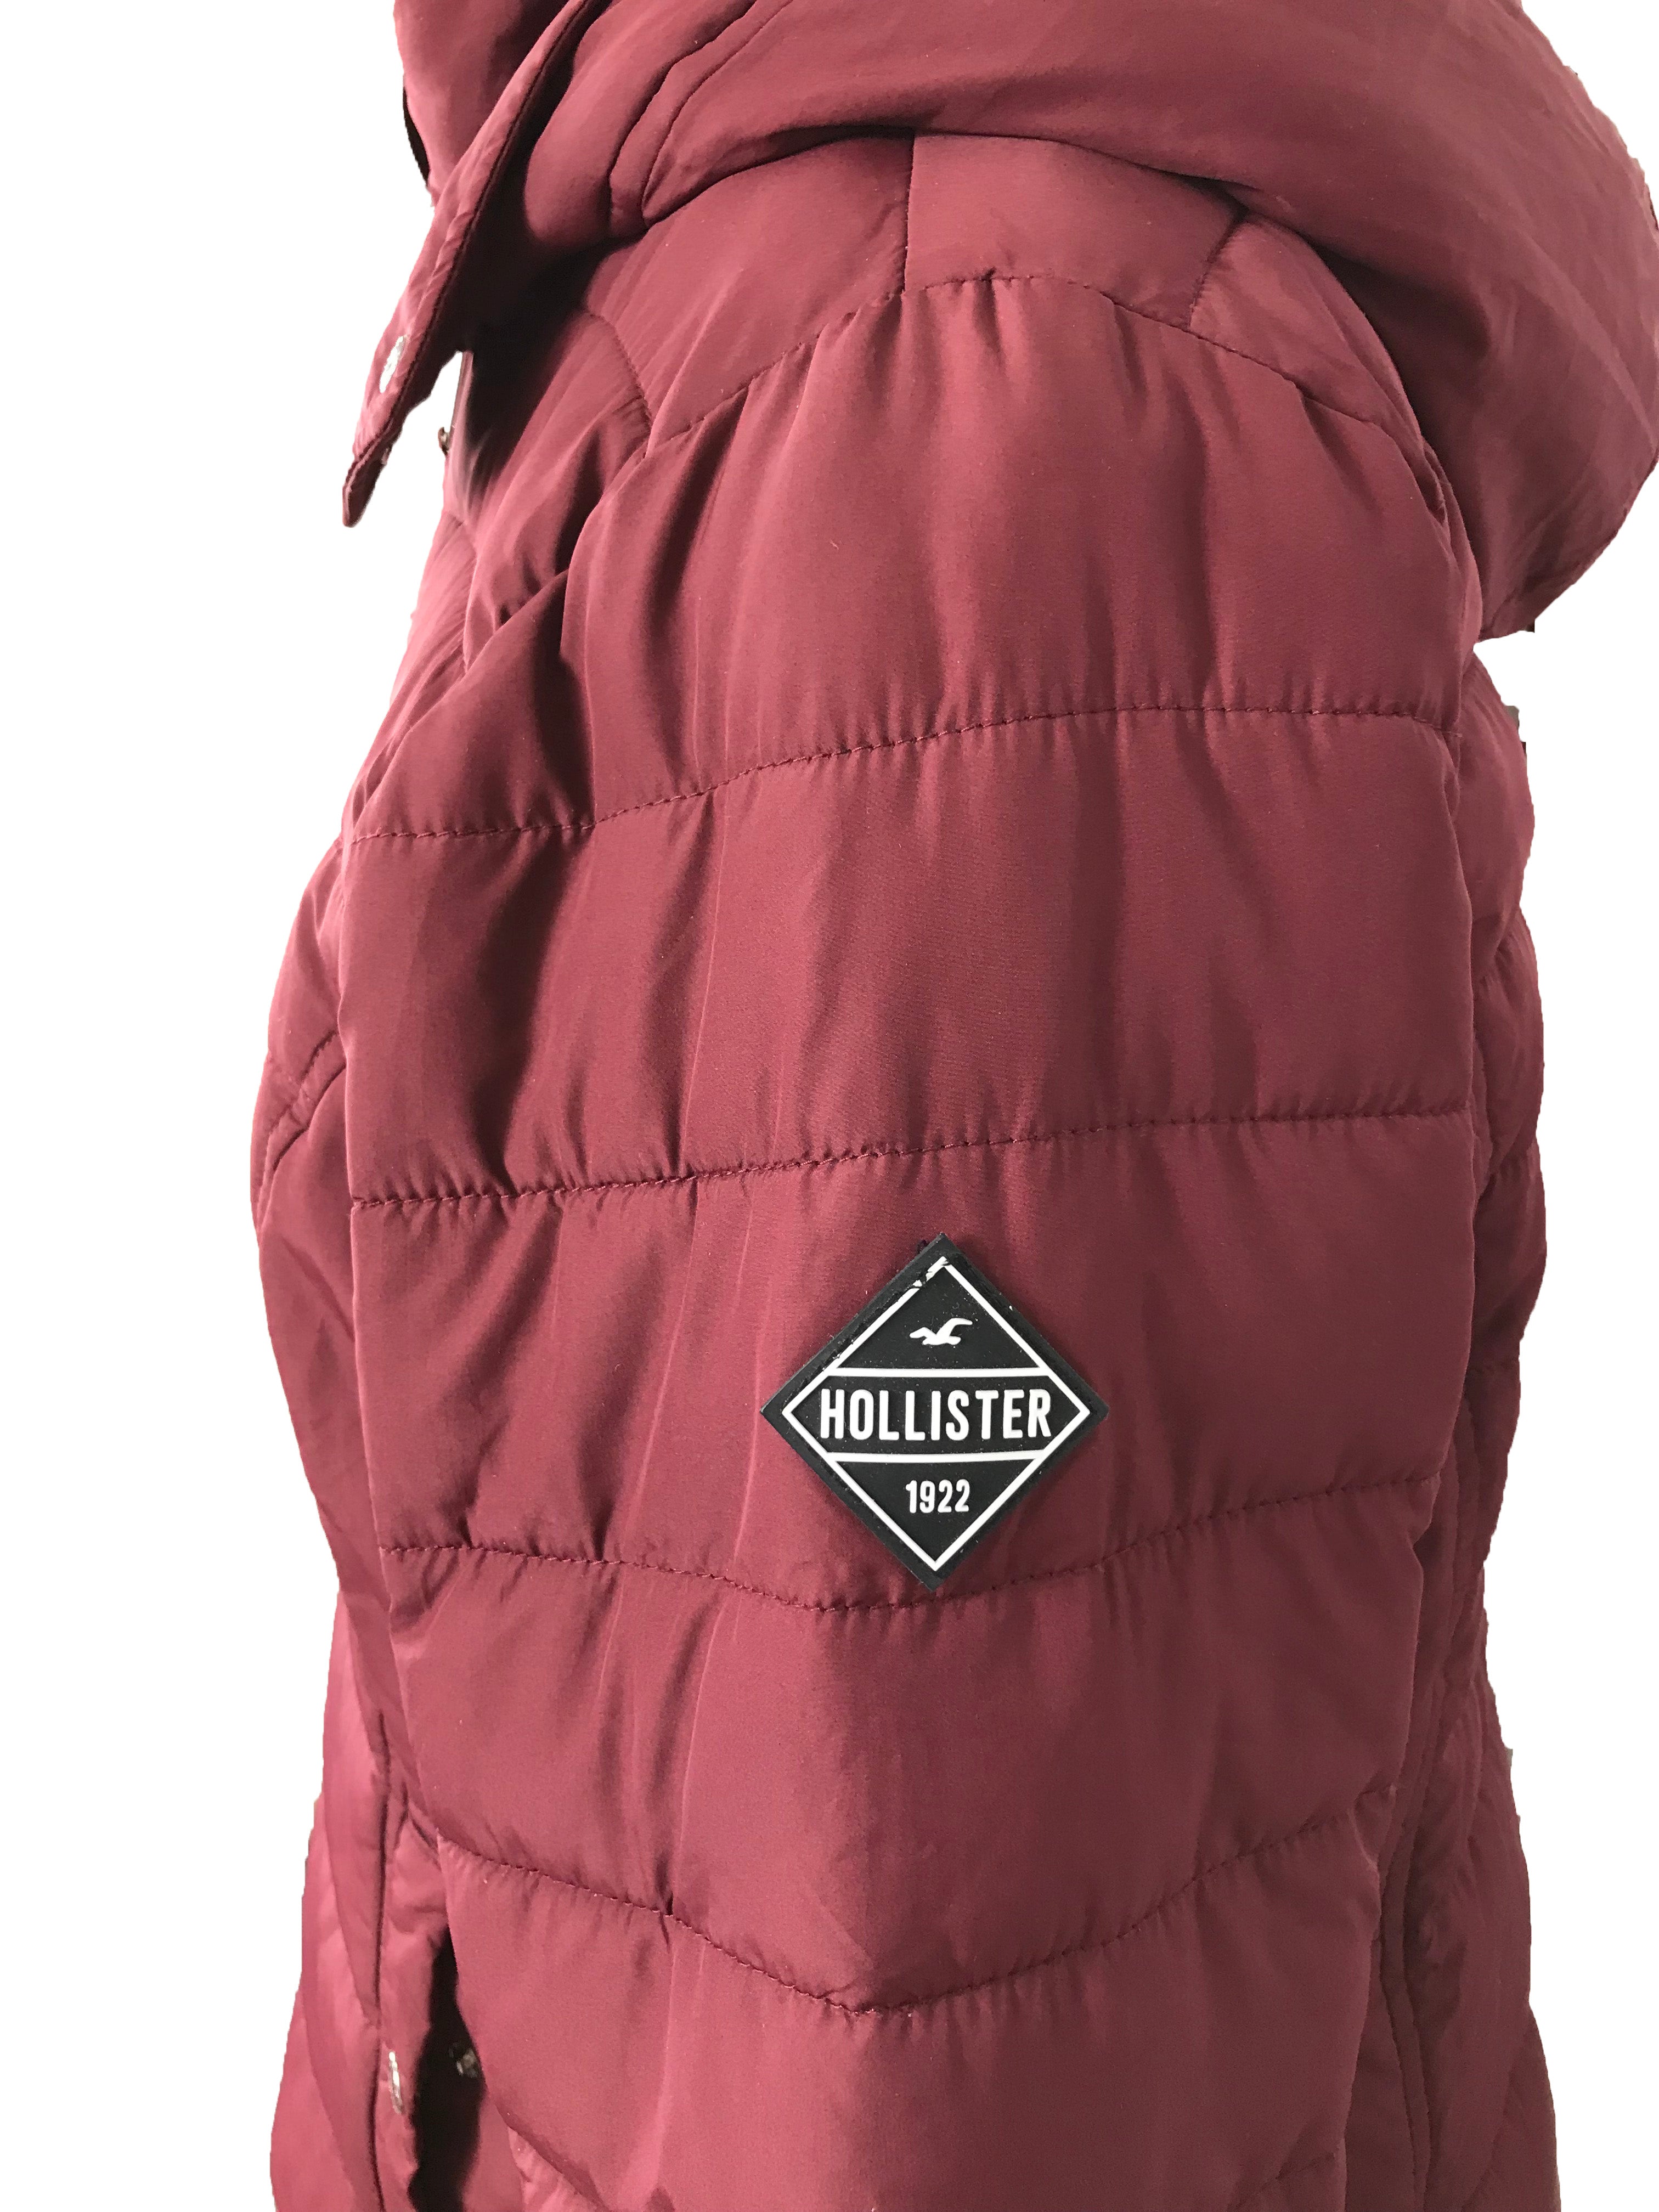 Hollister Burgundy Puffer Jacket Women's Size XL